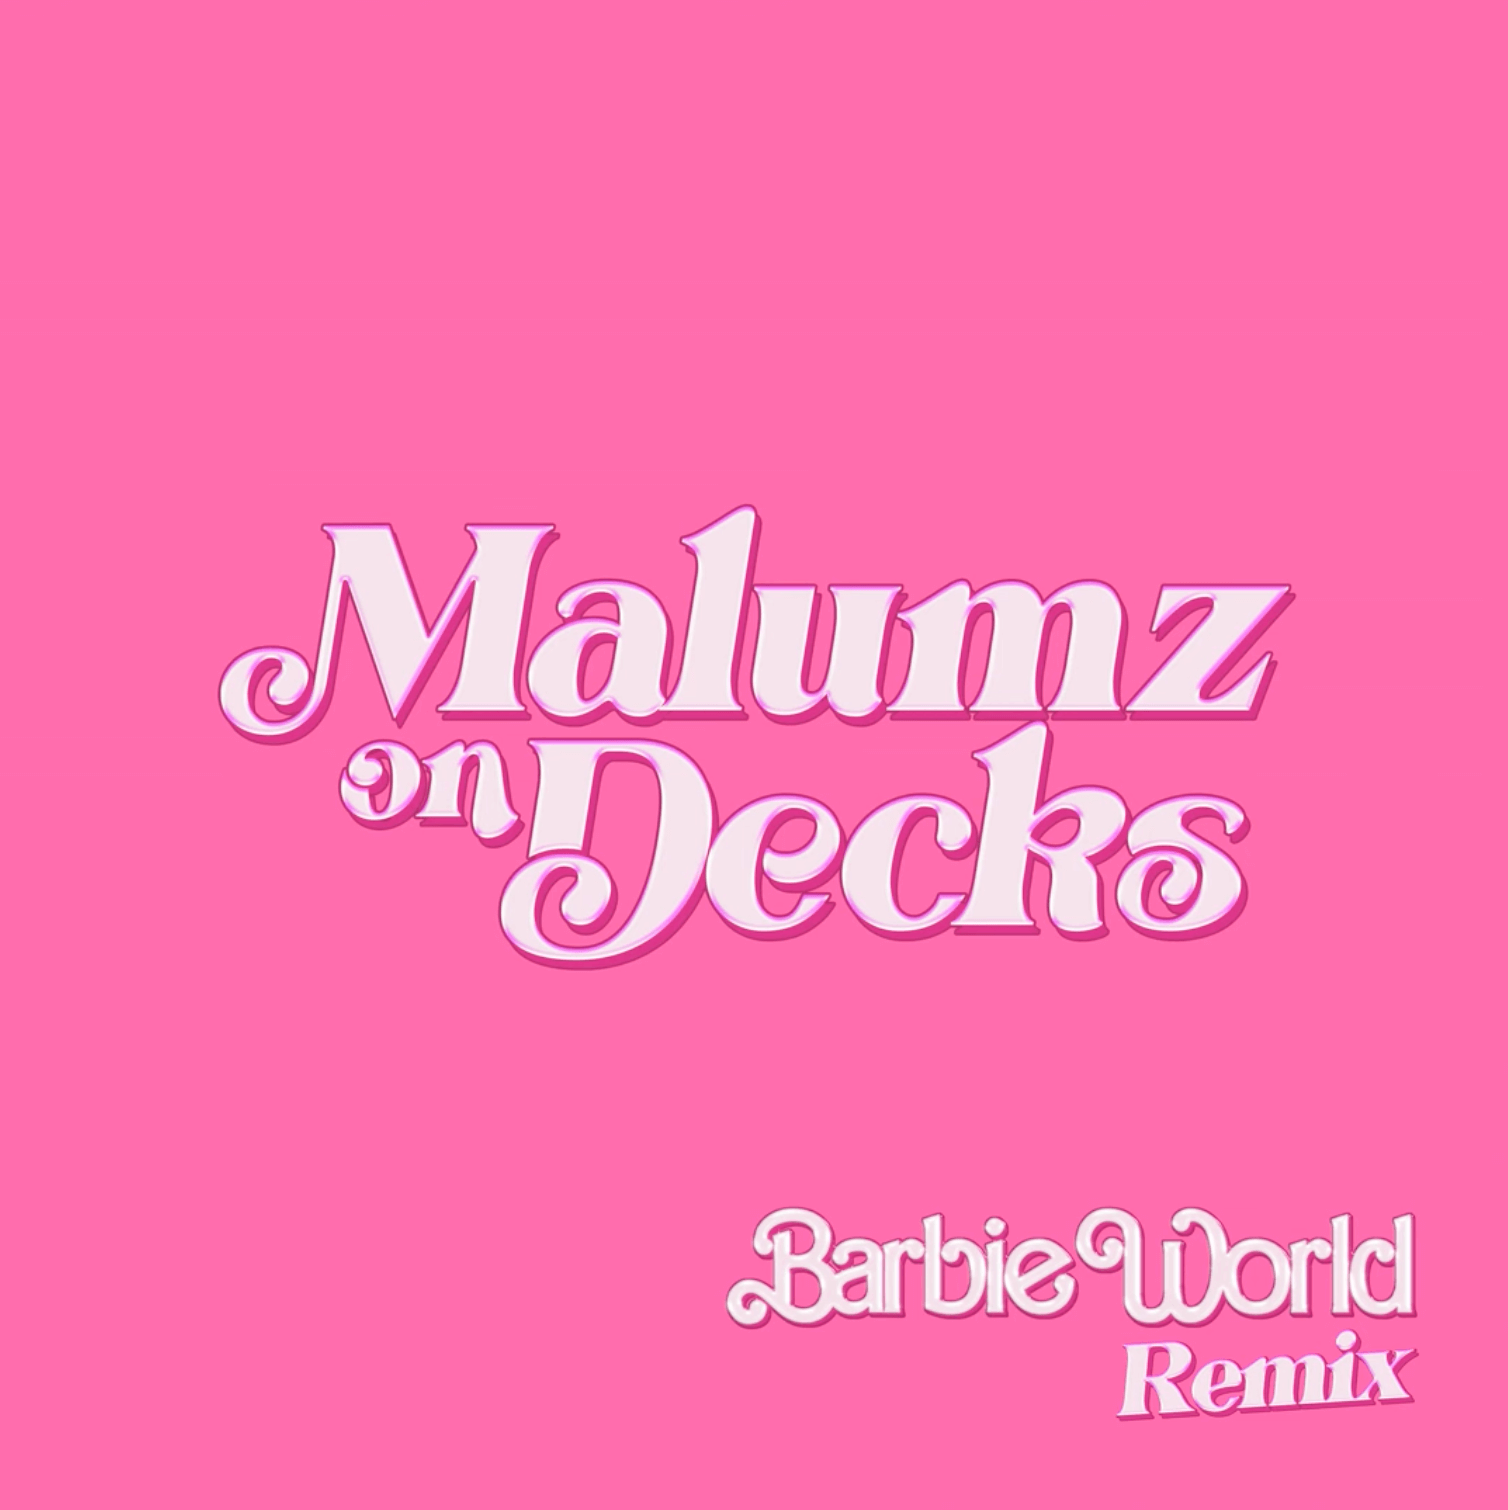 Nicki Minaj Barbie World (Remix by Malumz on Decks) Mp3 Download